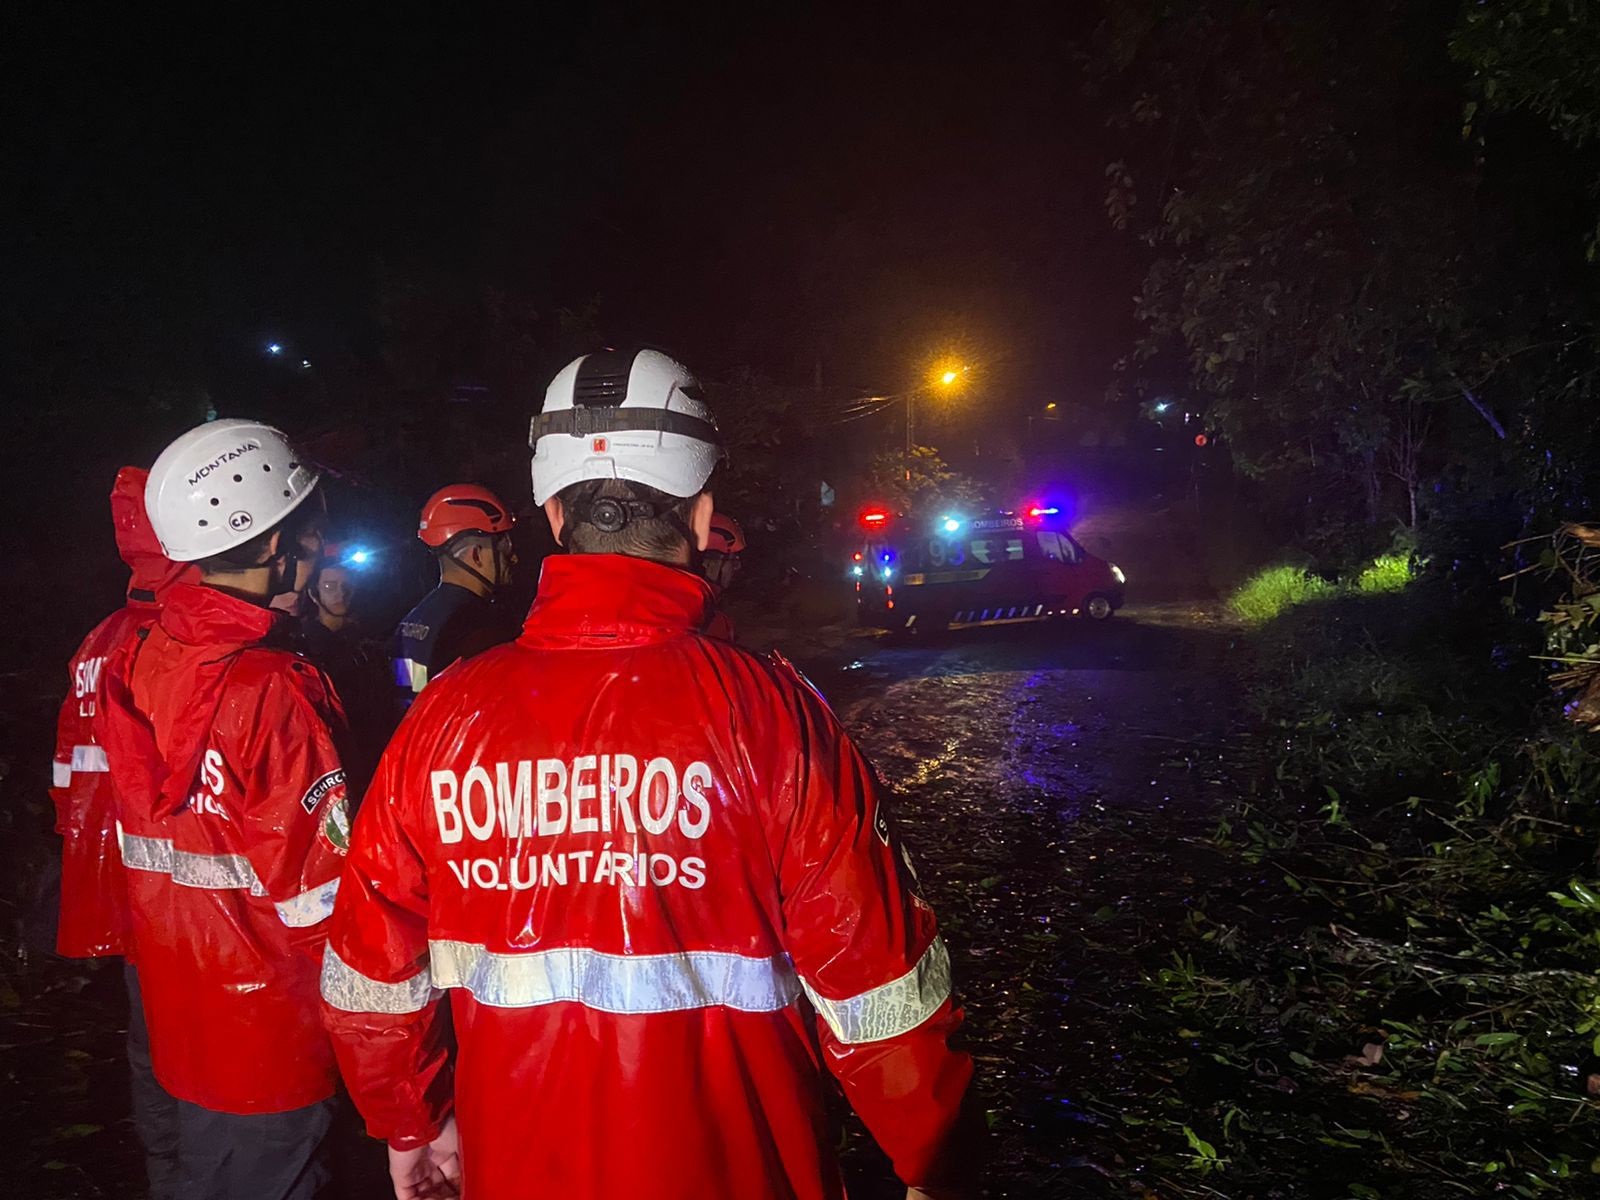 Foto: Bombeiros Voluntários de Schroeder